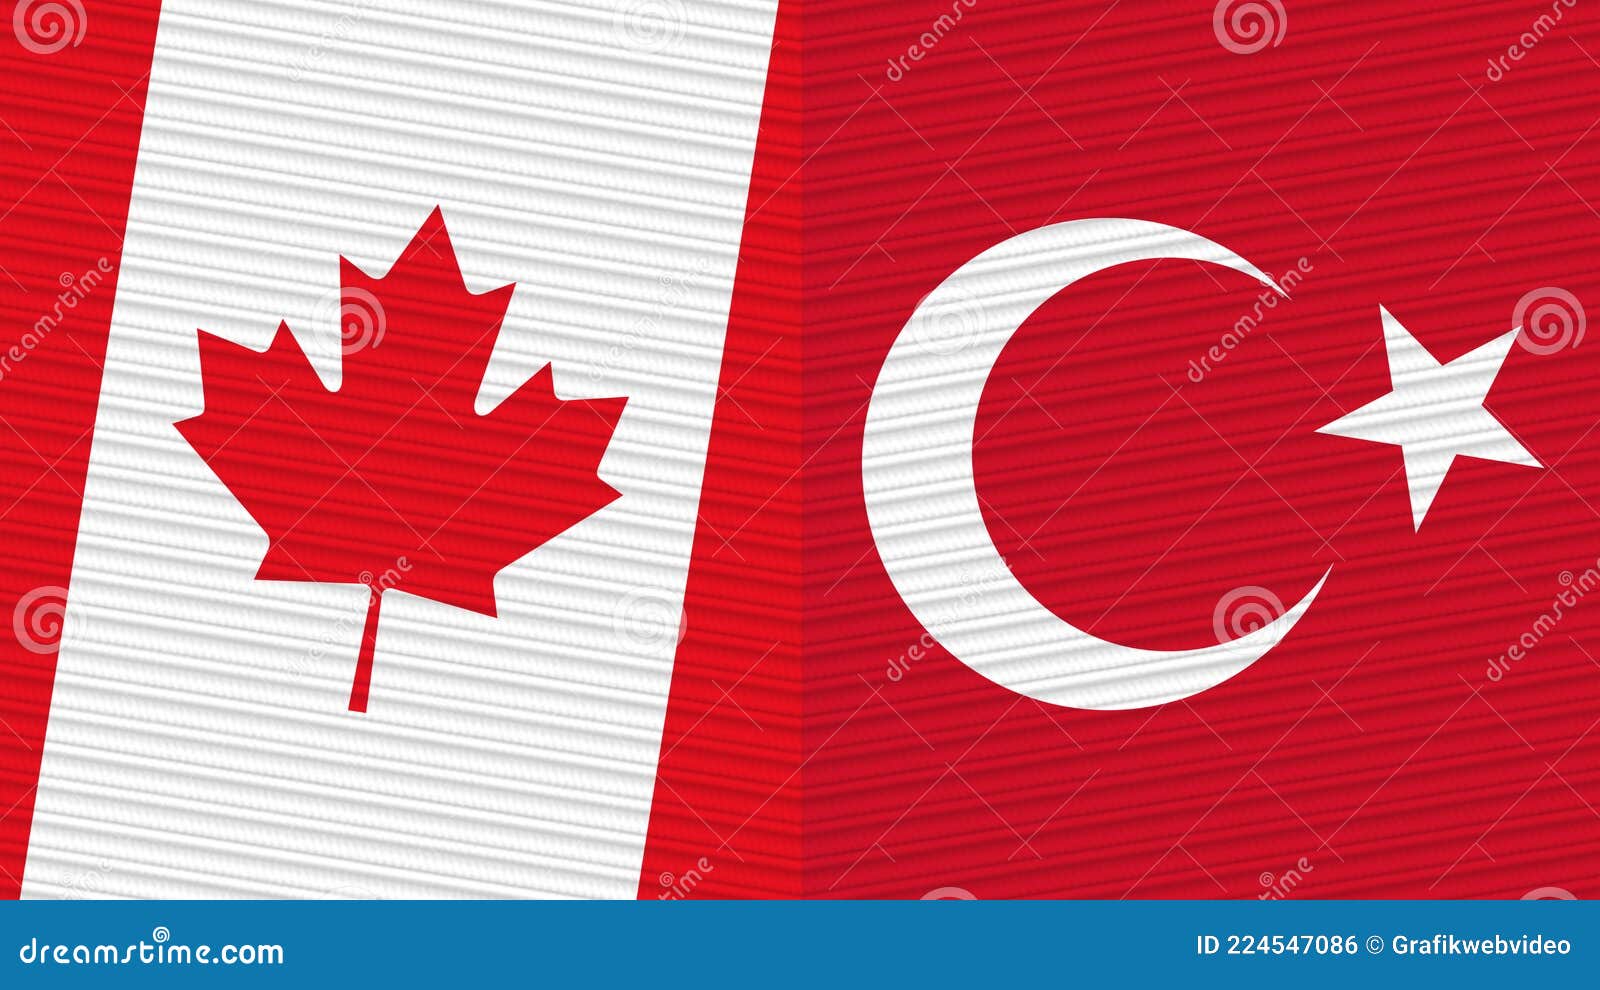 Turkije En Canada Twee Halve Vlaggen Samen Stock ...